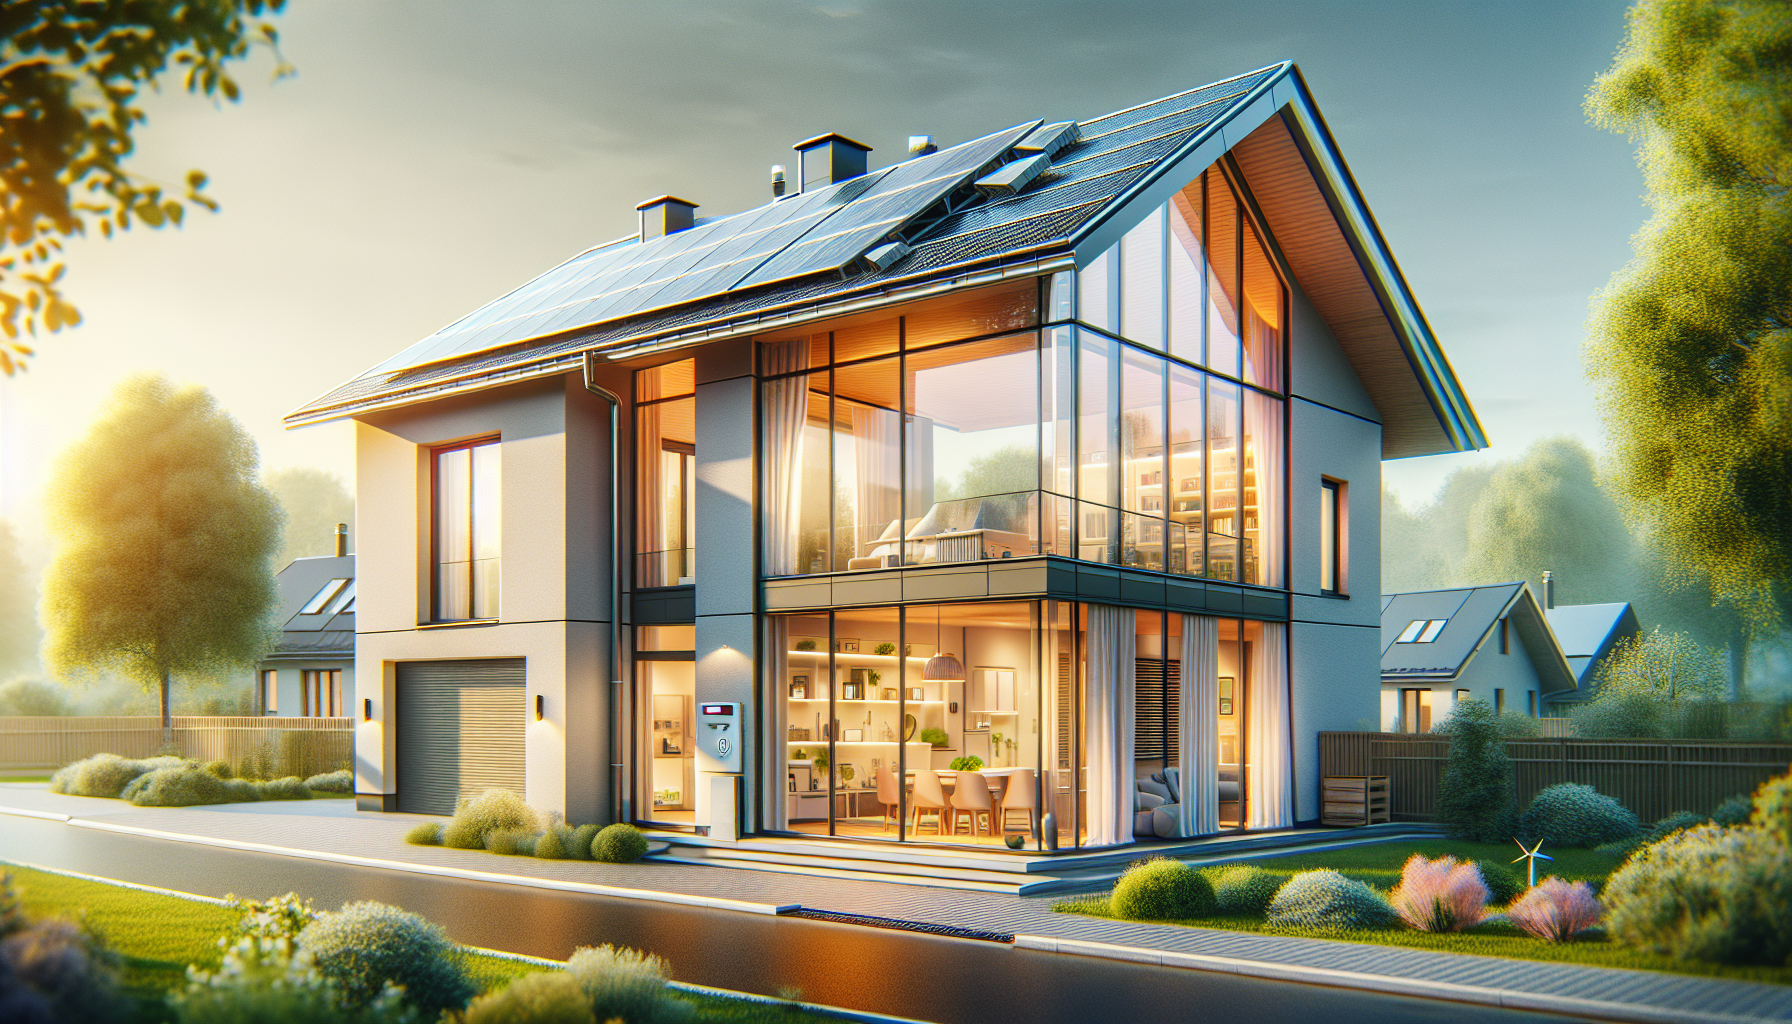 Energetische Sanierung Beispiel: Illustration eines modernisierten Einfamilienhauses